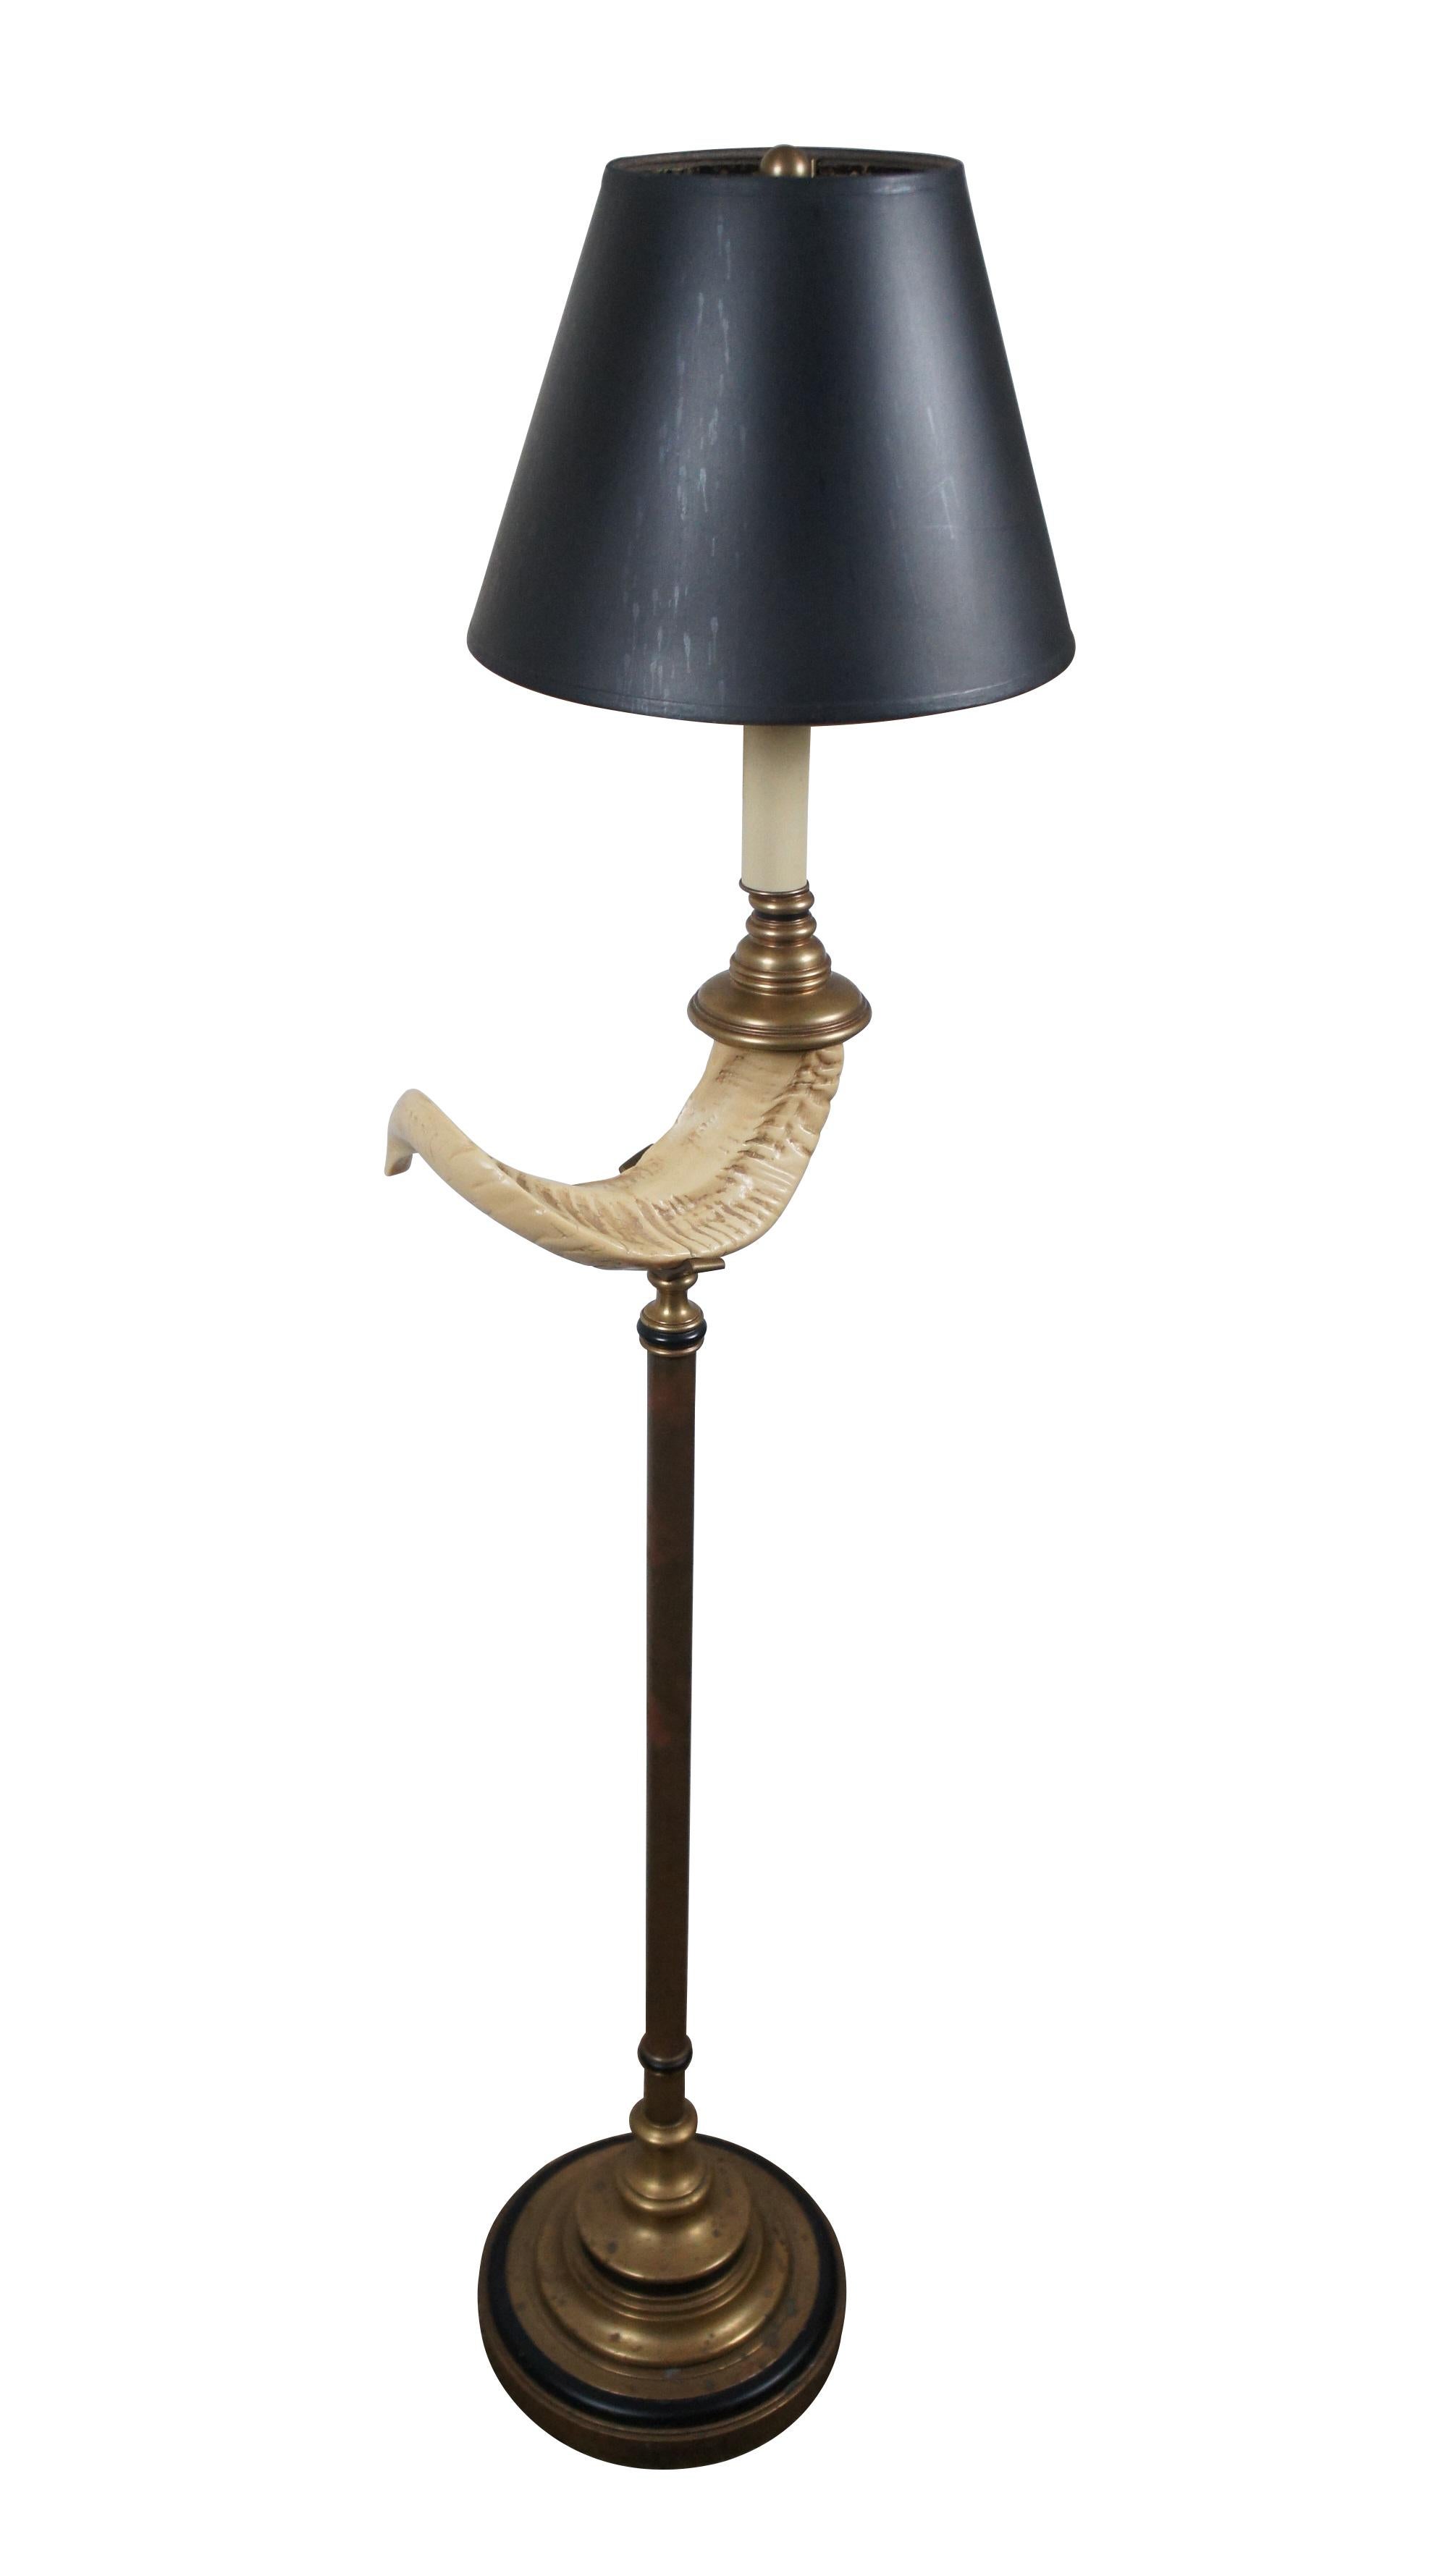 CIRCA 1970 Chapman Brass Stehlampe mit rundem, abgestuftem Sockel und künstlichem Widderhorn auf dem Säulenkörper mit schwarzen Akzenten, die zu einem falschen Kerzenständer oben führen. Schwarzer Papierschirm mit folierter Innenseite. Inklusive